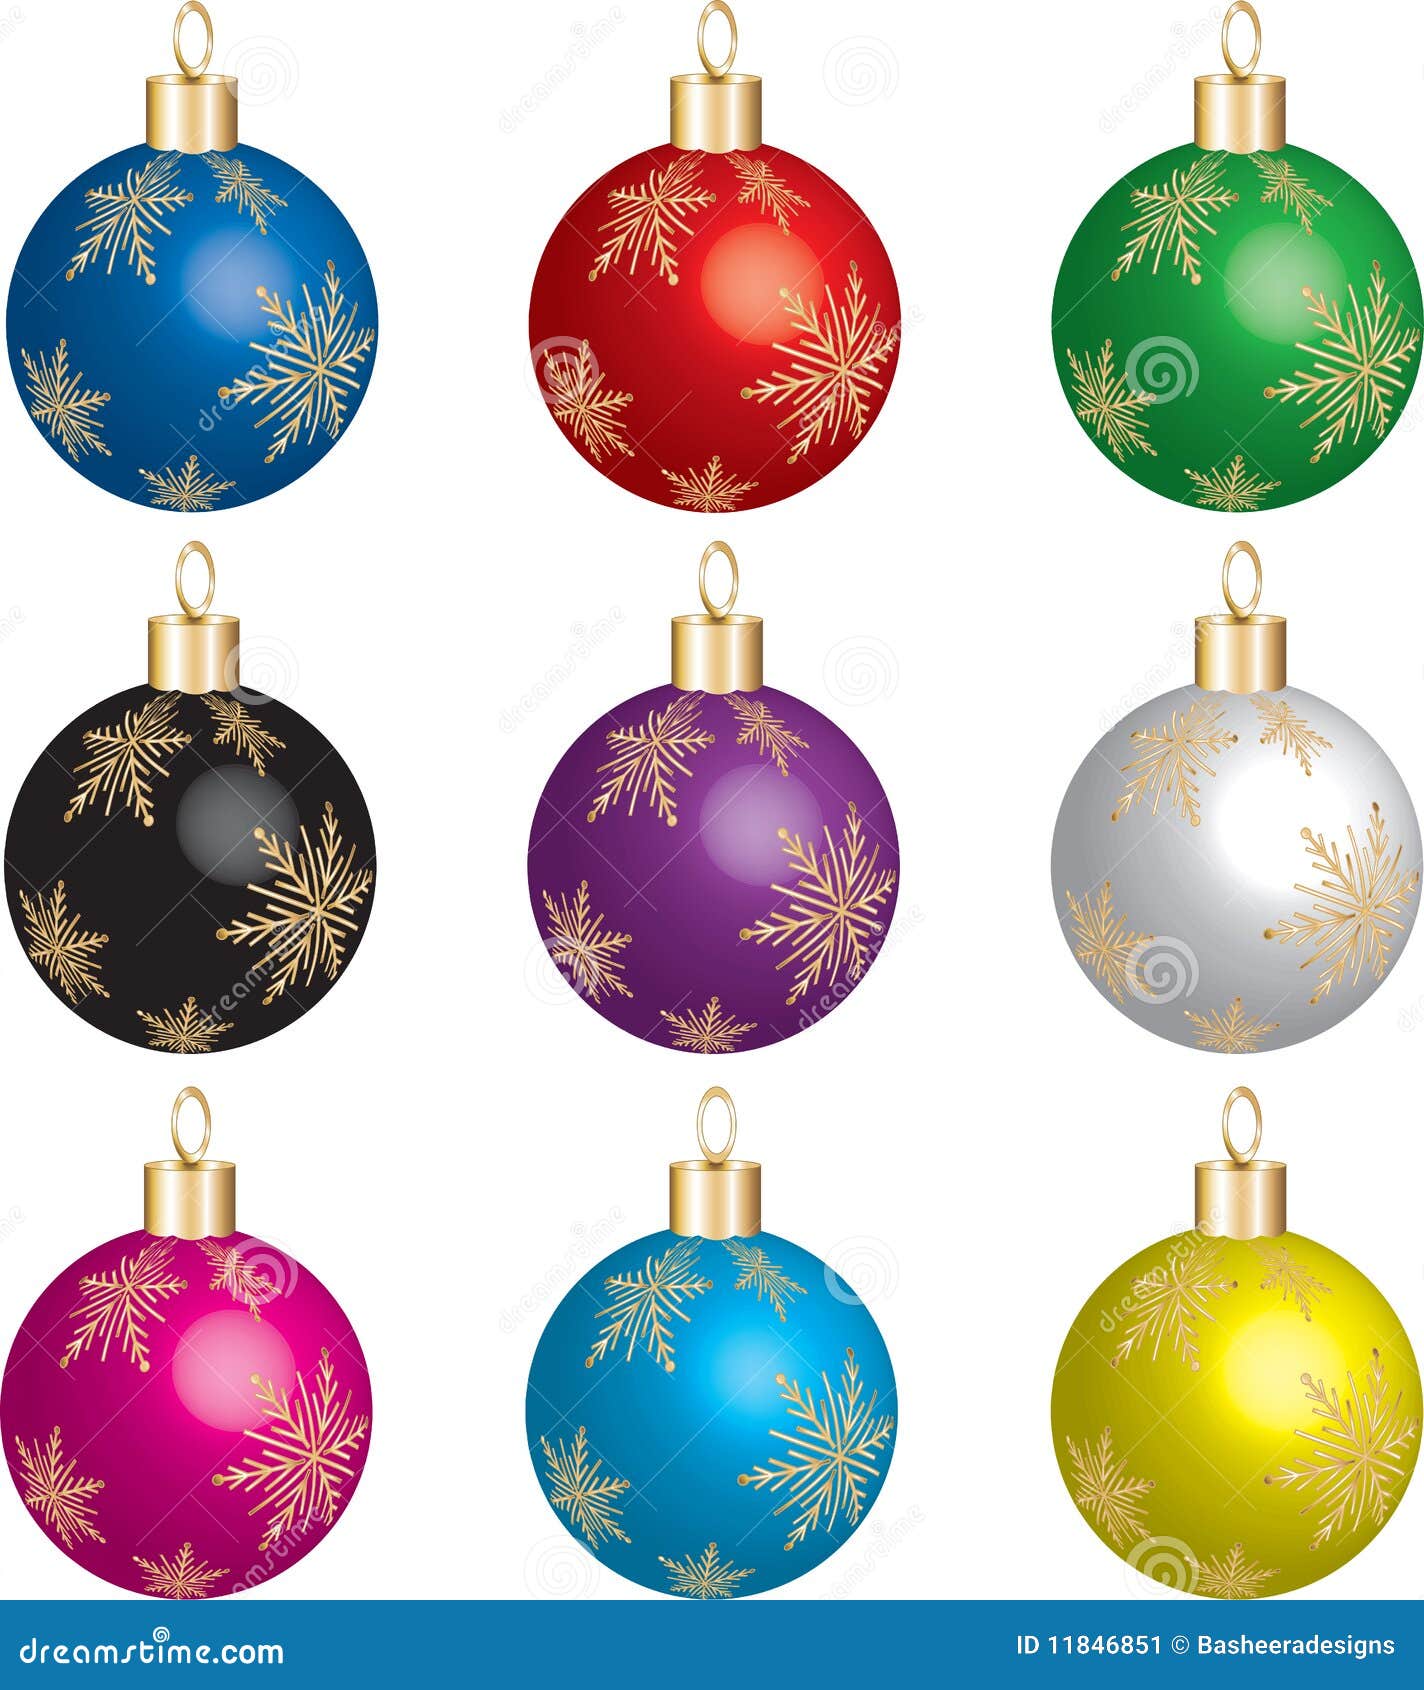 Cartoon Christmas Ornaments Stock Illustrations – 10,506 Cartoon Christmas  Ornaments Stock Illustrations, Vectors & Clipart - Dreamstime